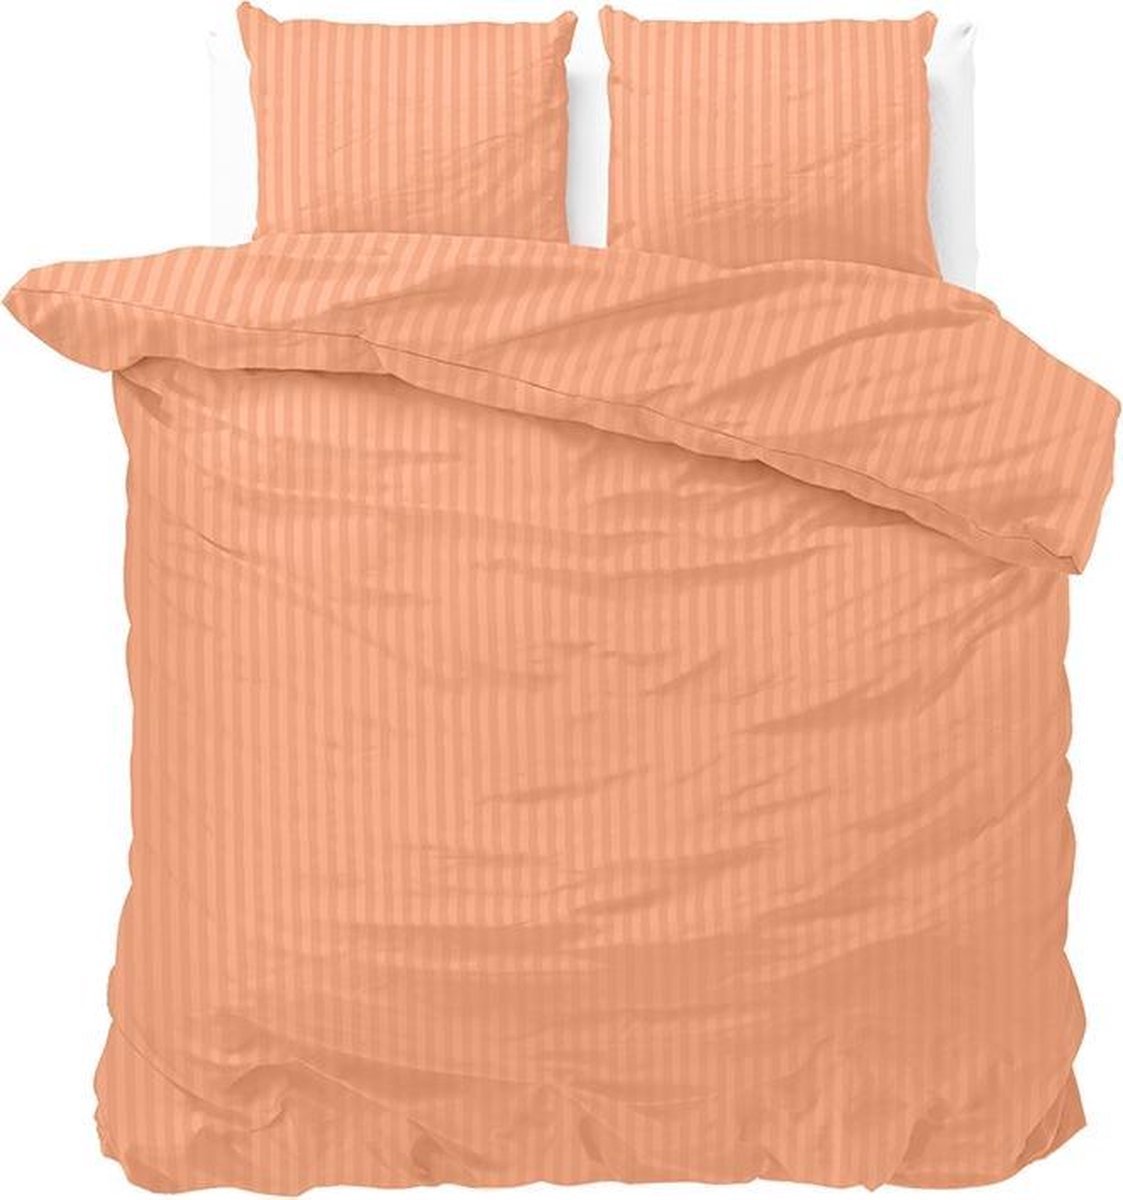 Luxe dekbedovertrek Stripes pastel oranje - 140x200/220 (eenpersoons) - zacht en fijne kwaliteit - stijlvolle uitstraling - met handige drukknopen